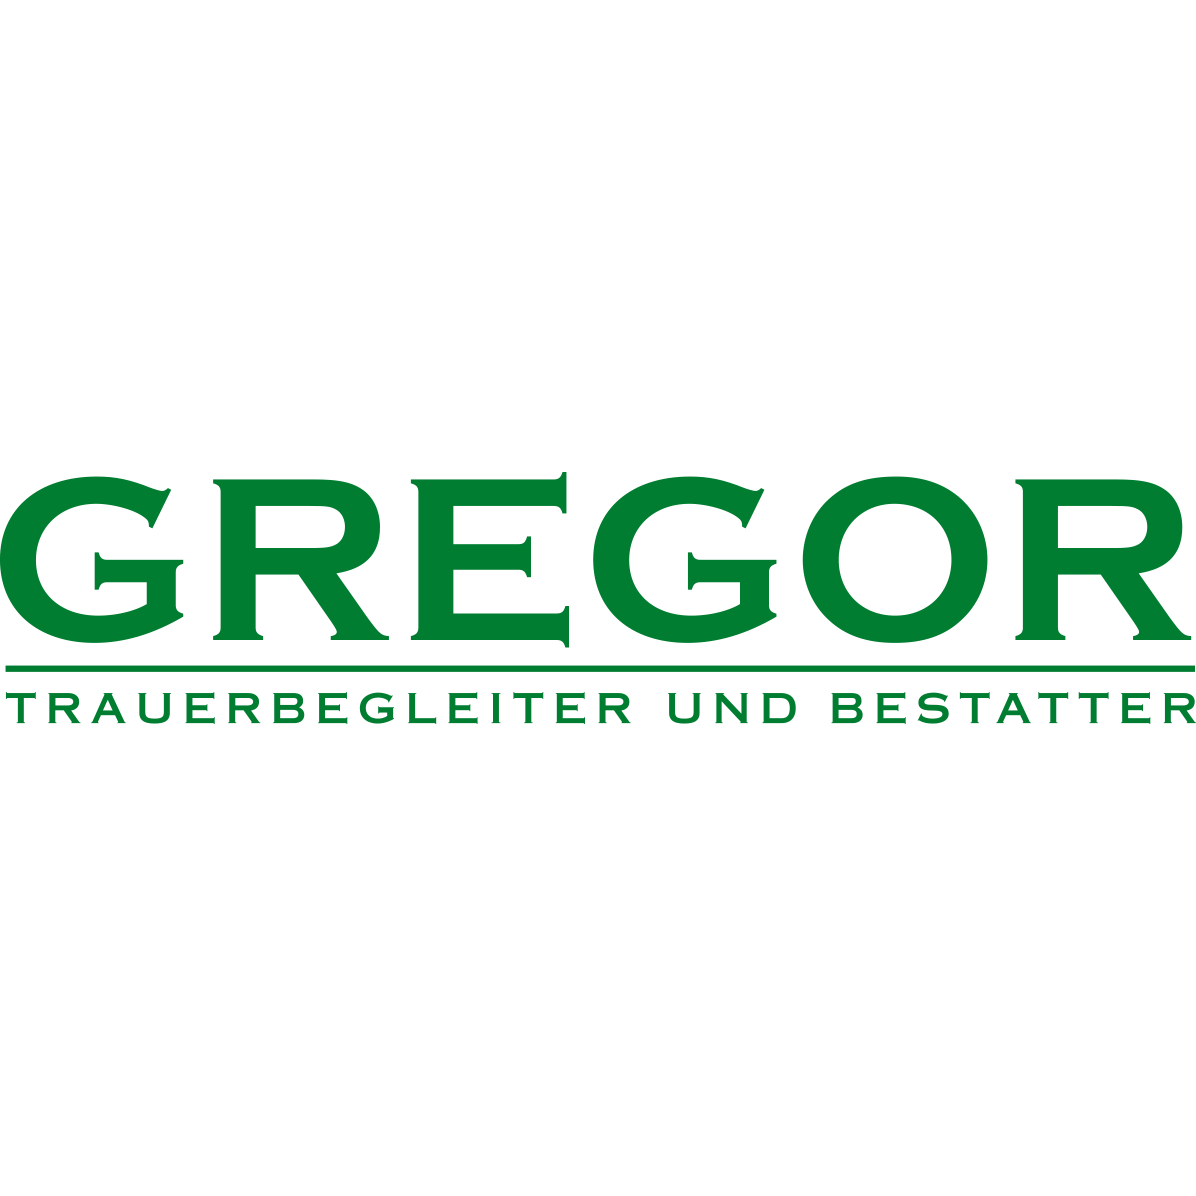 Logo Trauerbegleitung und Bestattung Jürgen Gregor GmbH